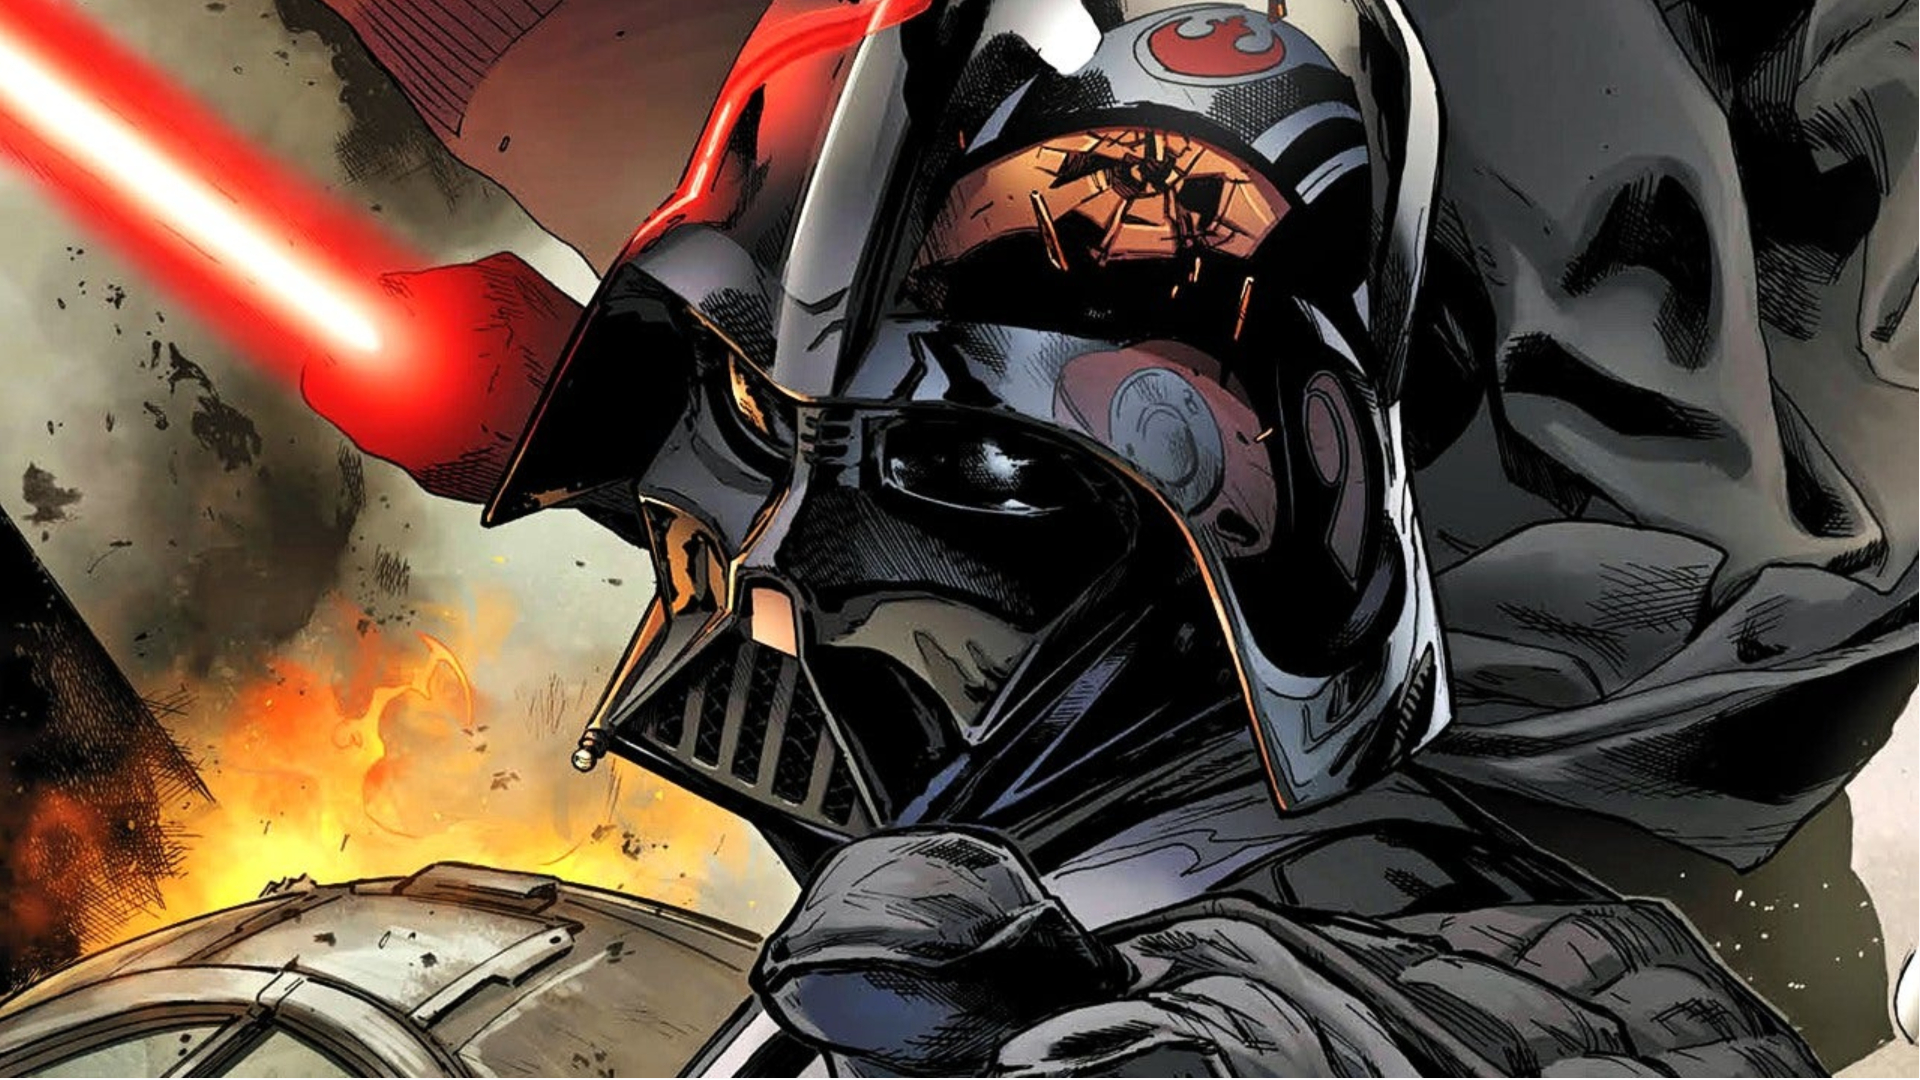 Arte da capa de quadrinhos de Darth Vader derrubando um soldado rebelde.